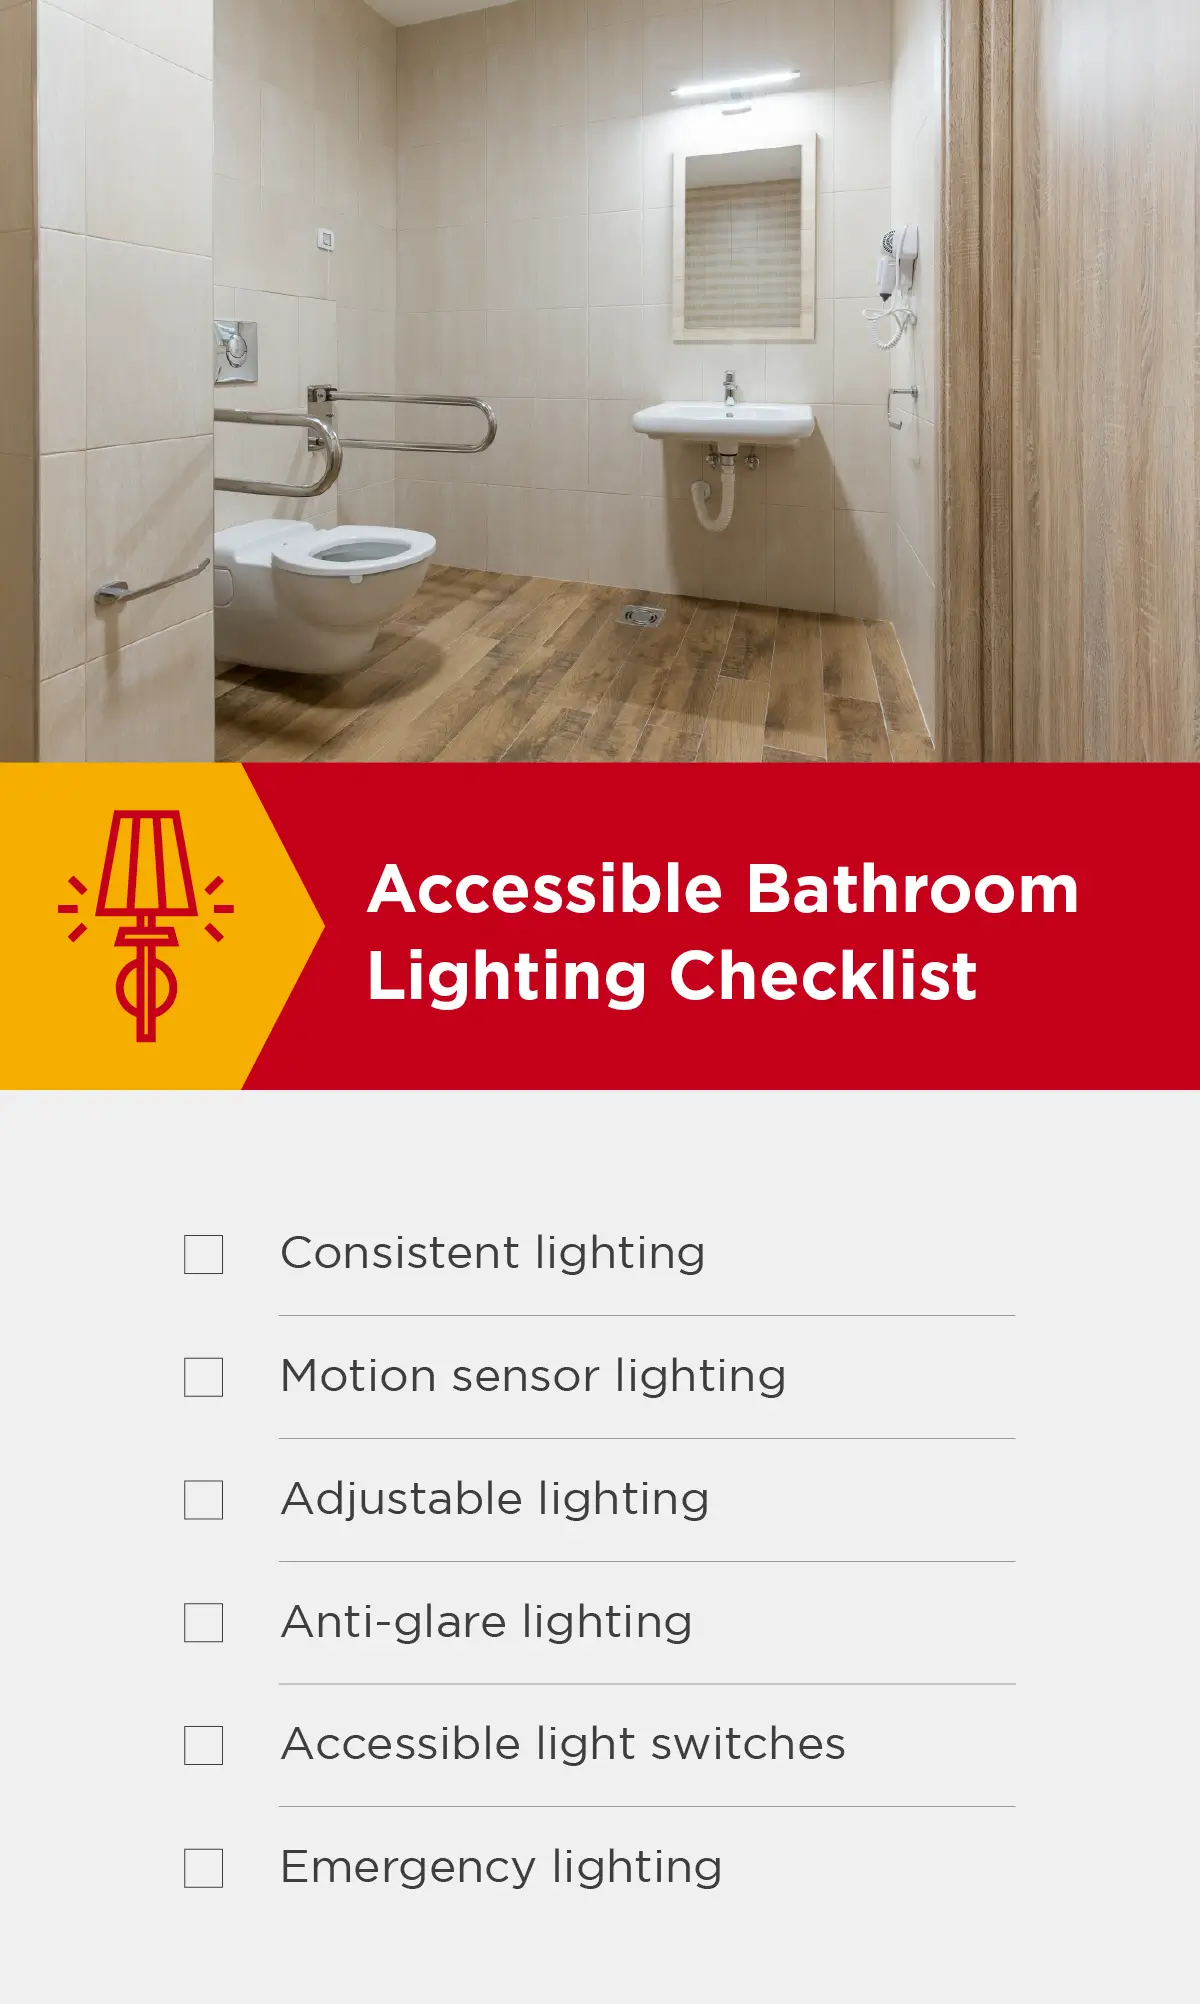 Accessible bathroom lighting checklist